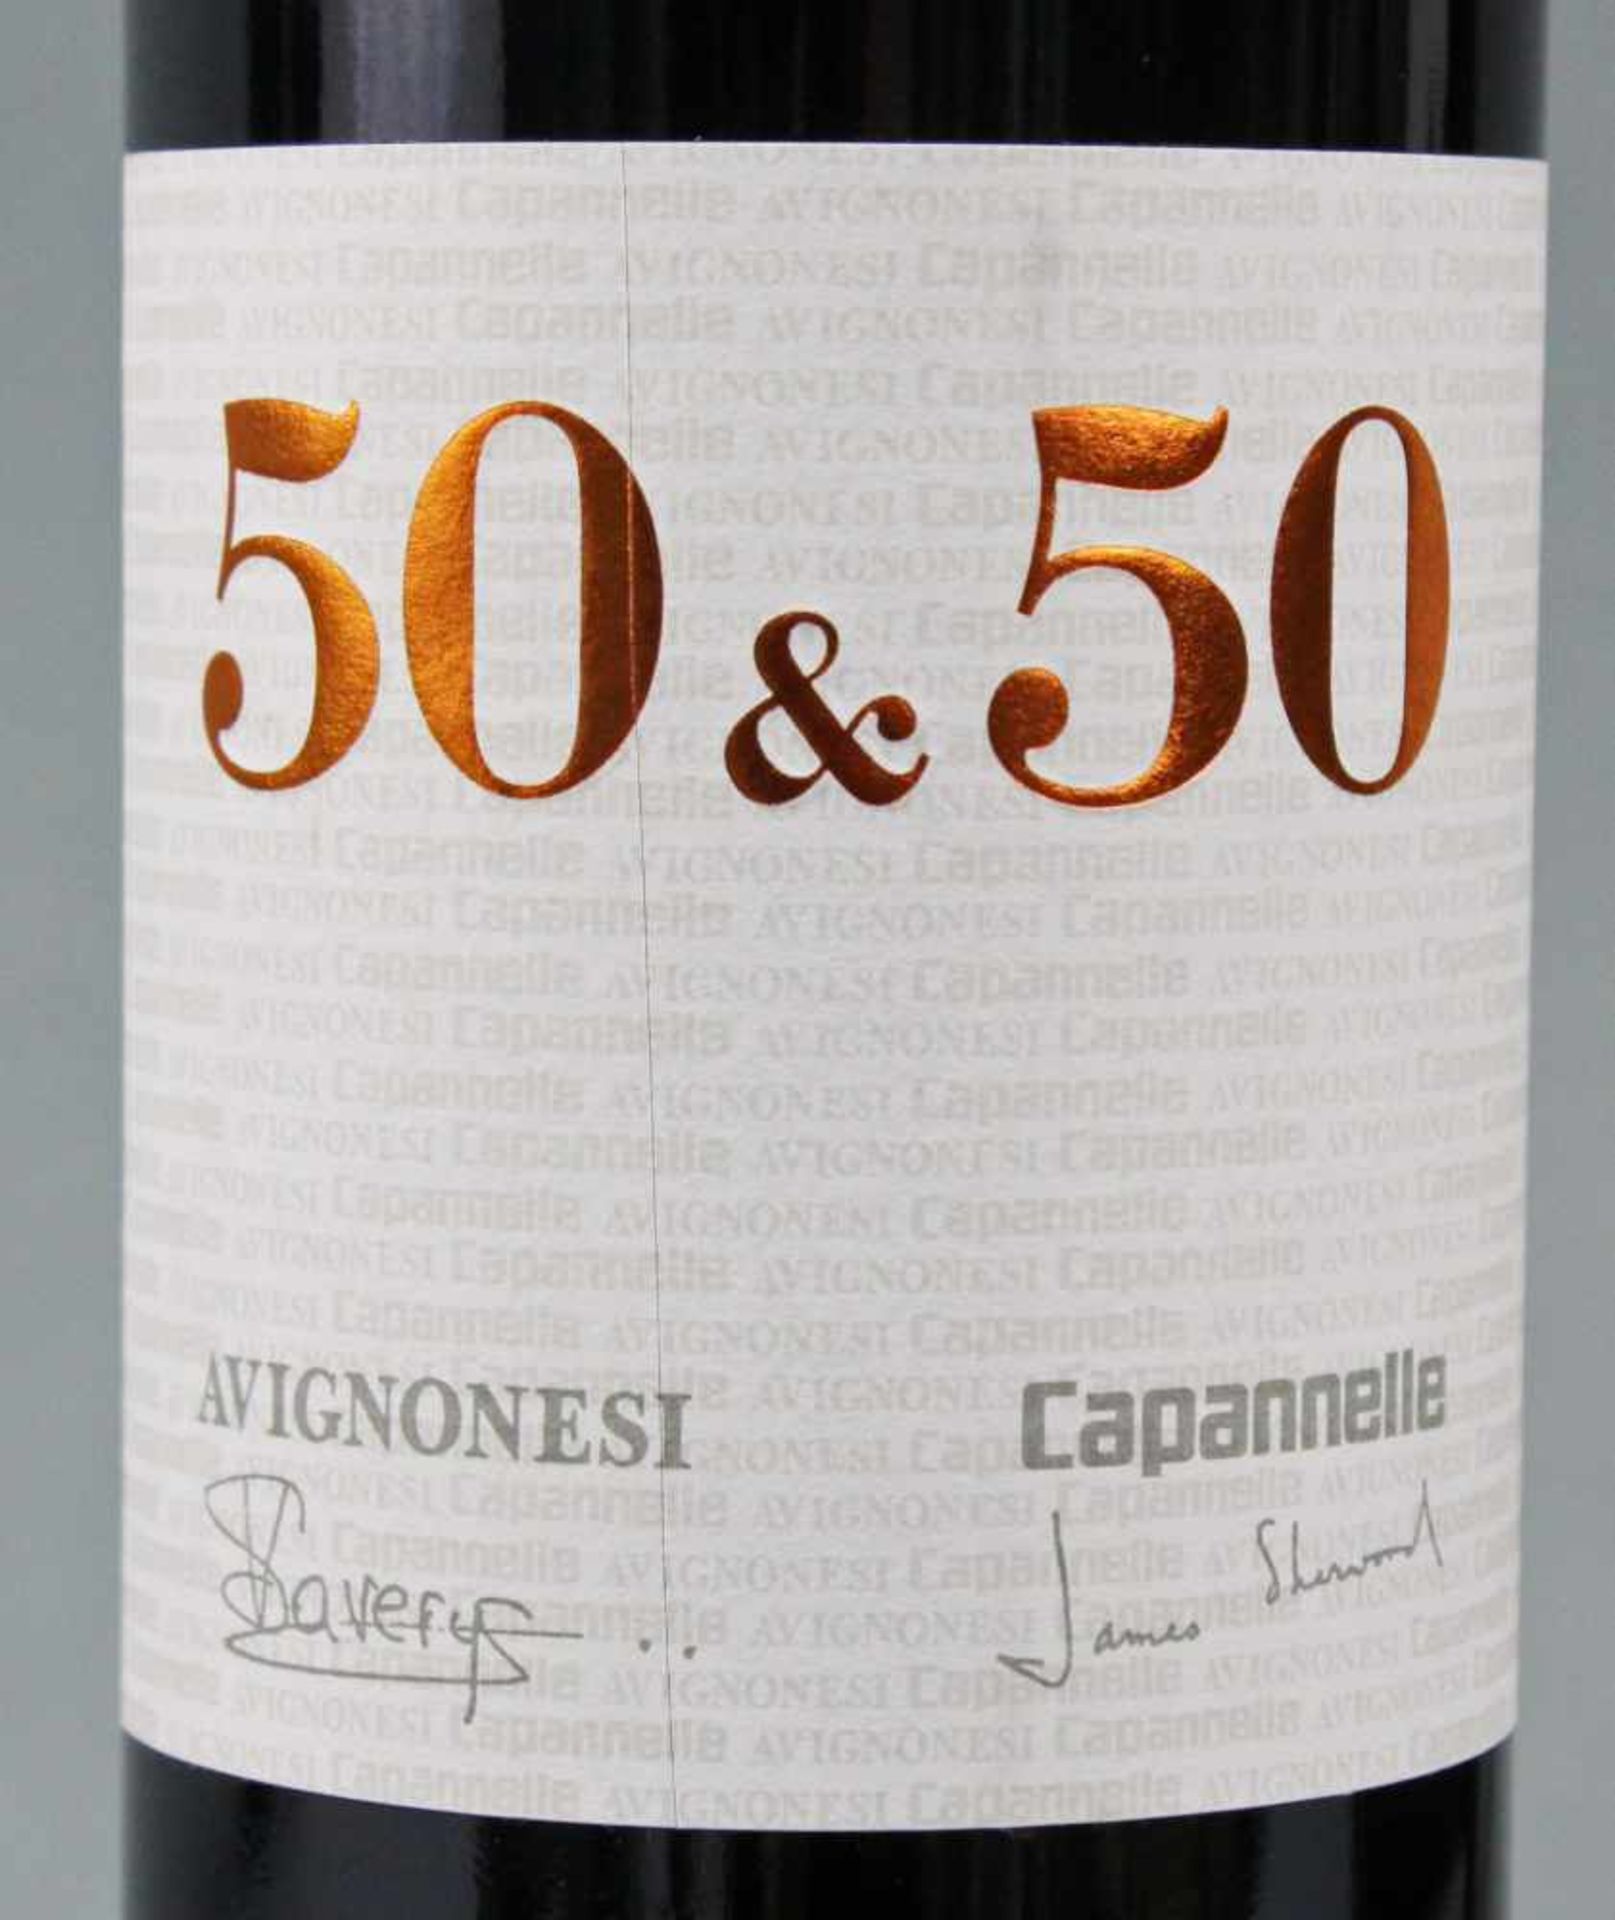 2010 "50 & 50" Avignonesi. Capannelle. Toscana. IGT.Imbottigliato all'origine da: Avignonesi srl - Bild 7 aus 8